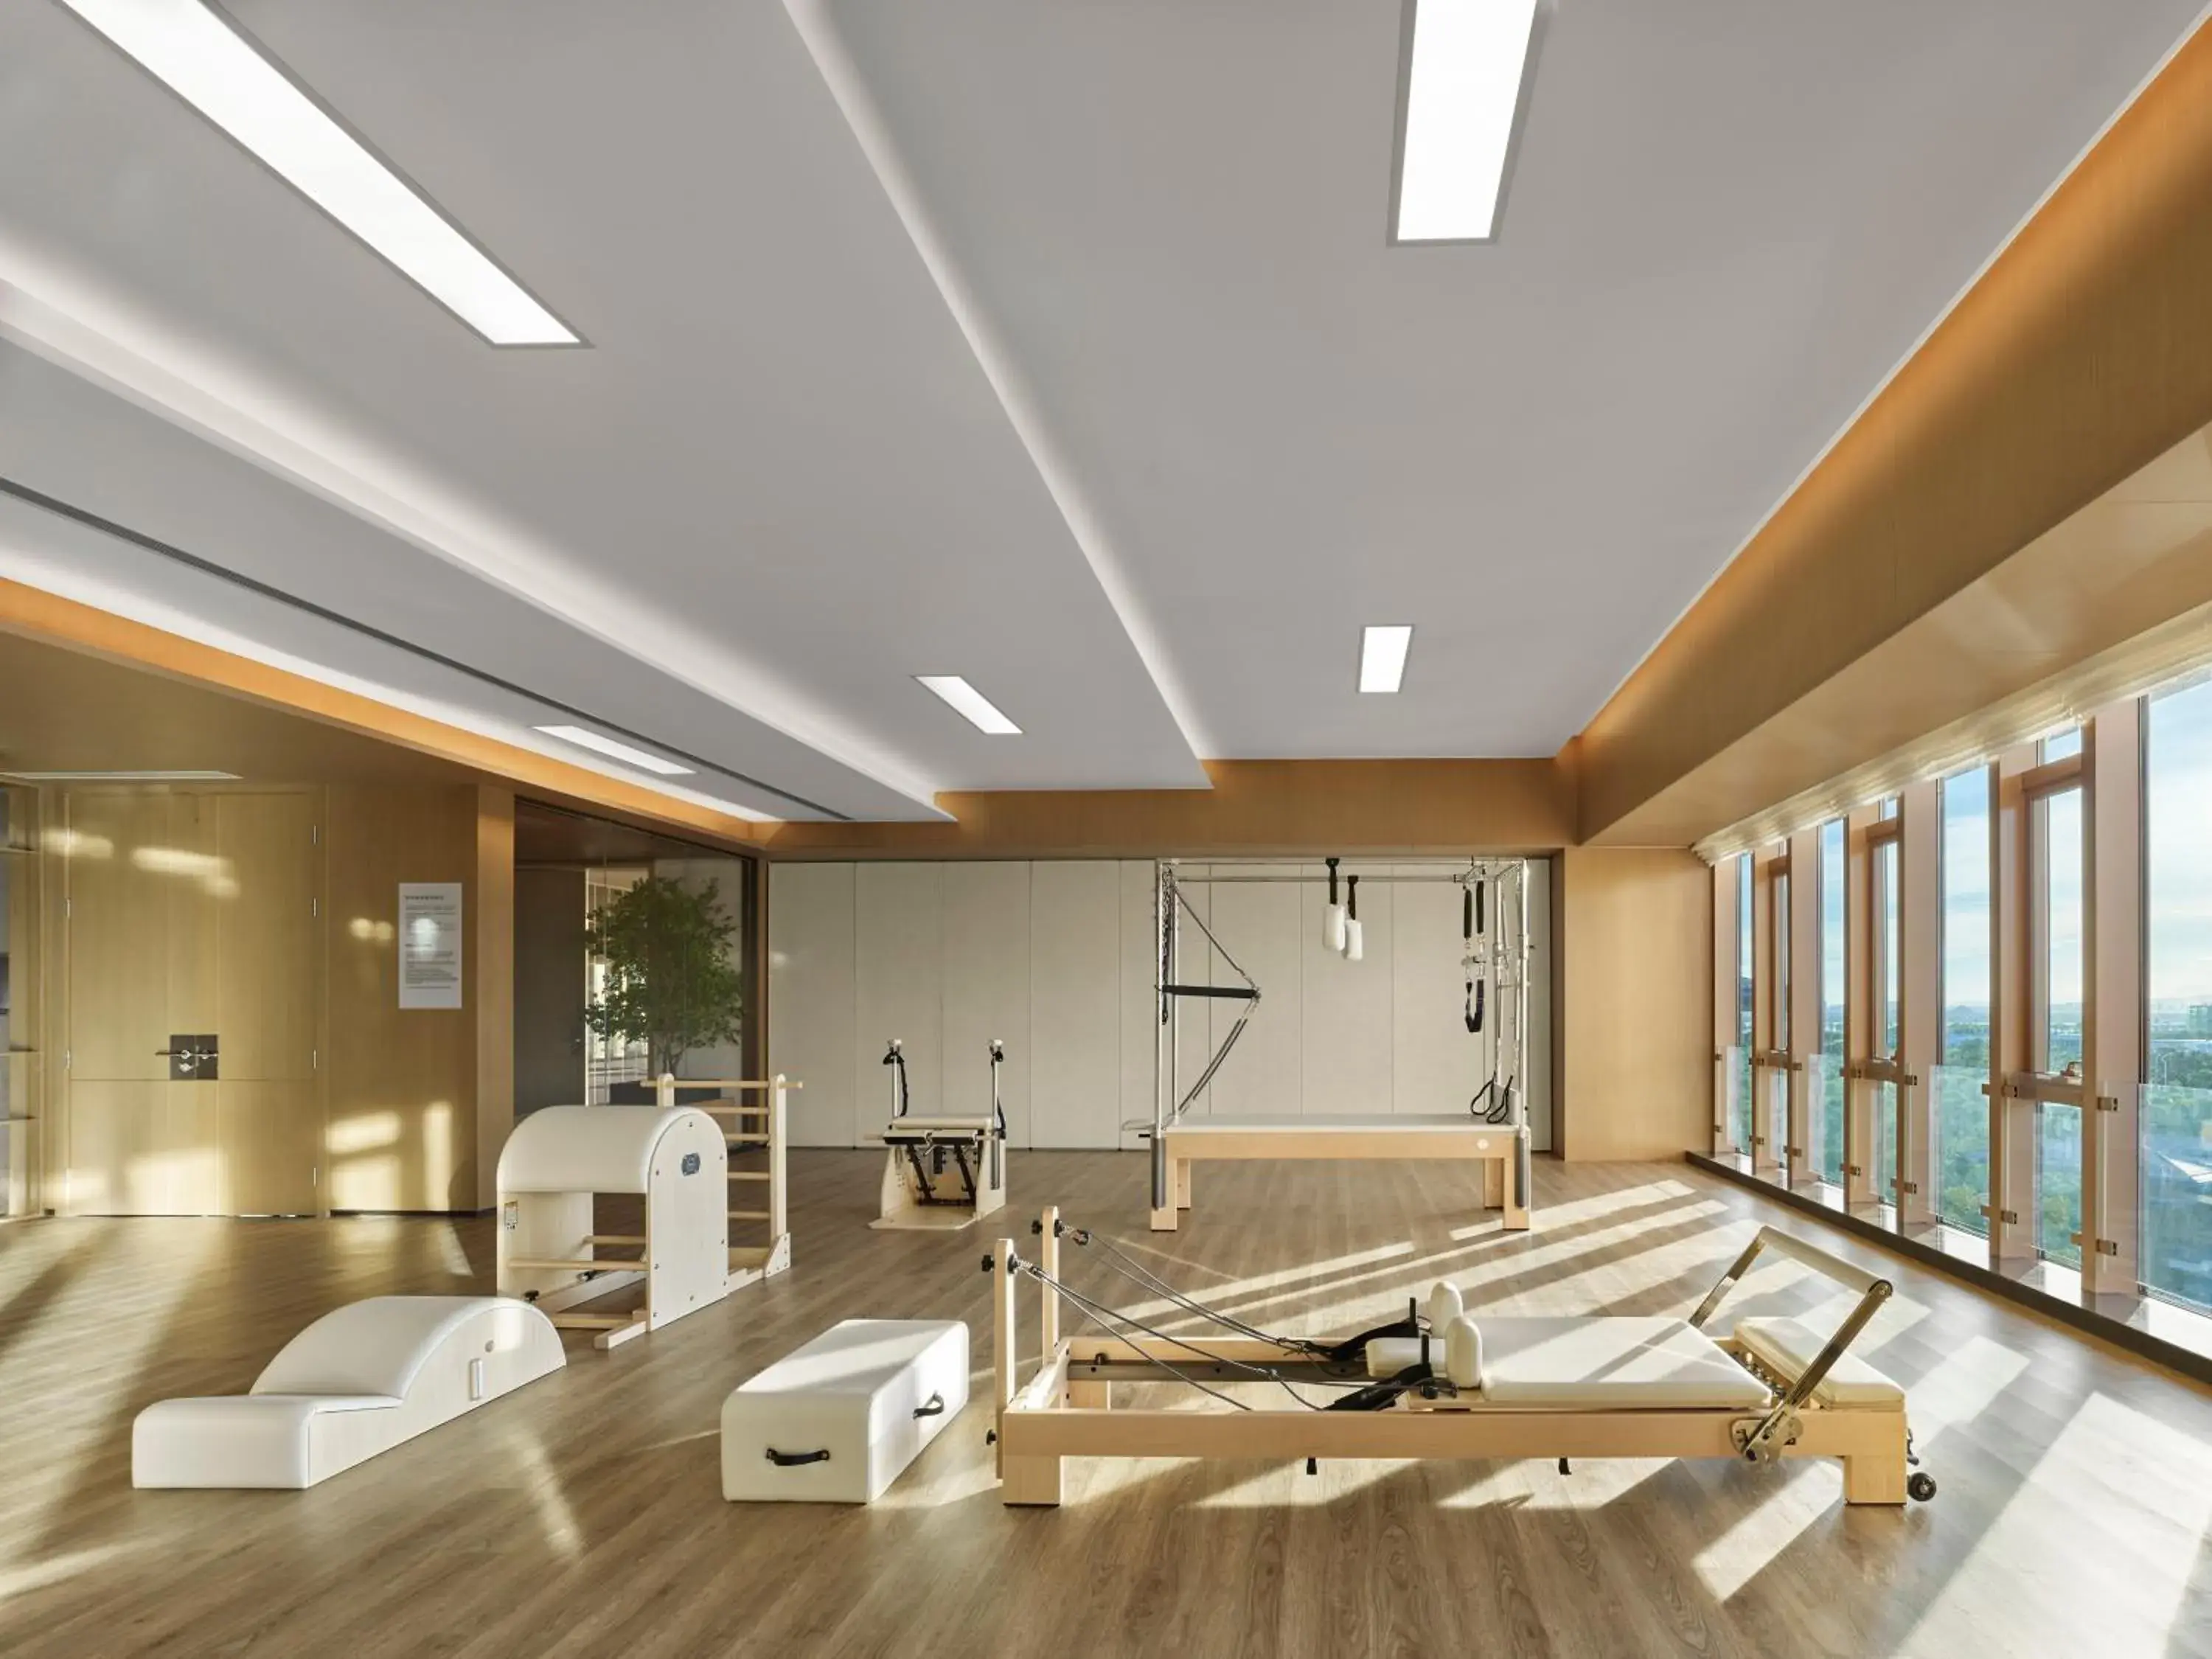 Fitness centre/facilities in Angsana Zhuhai Henqing